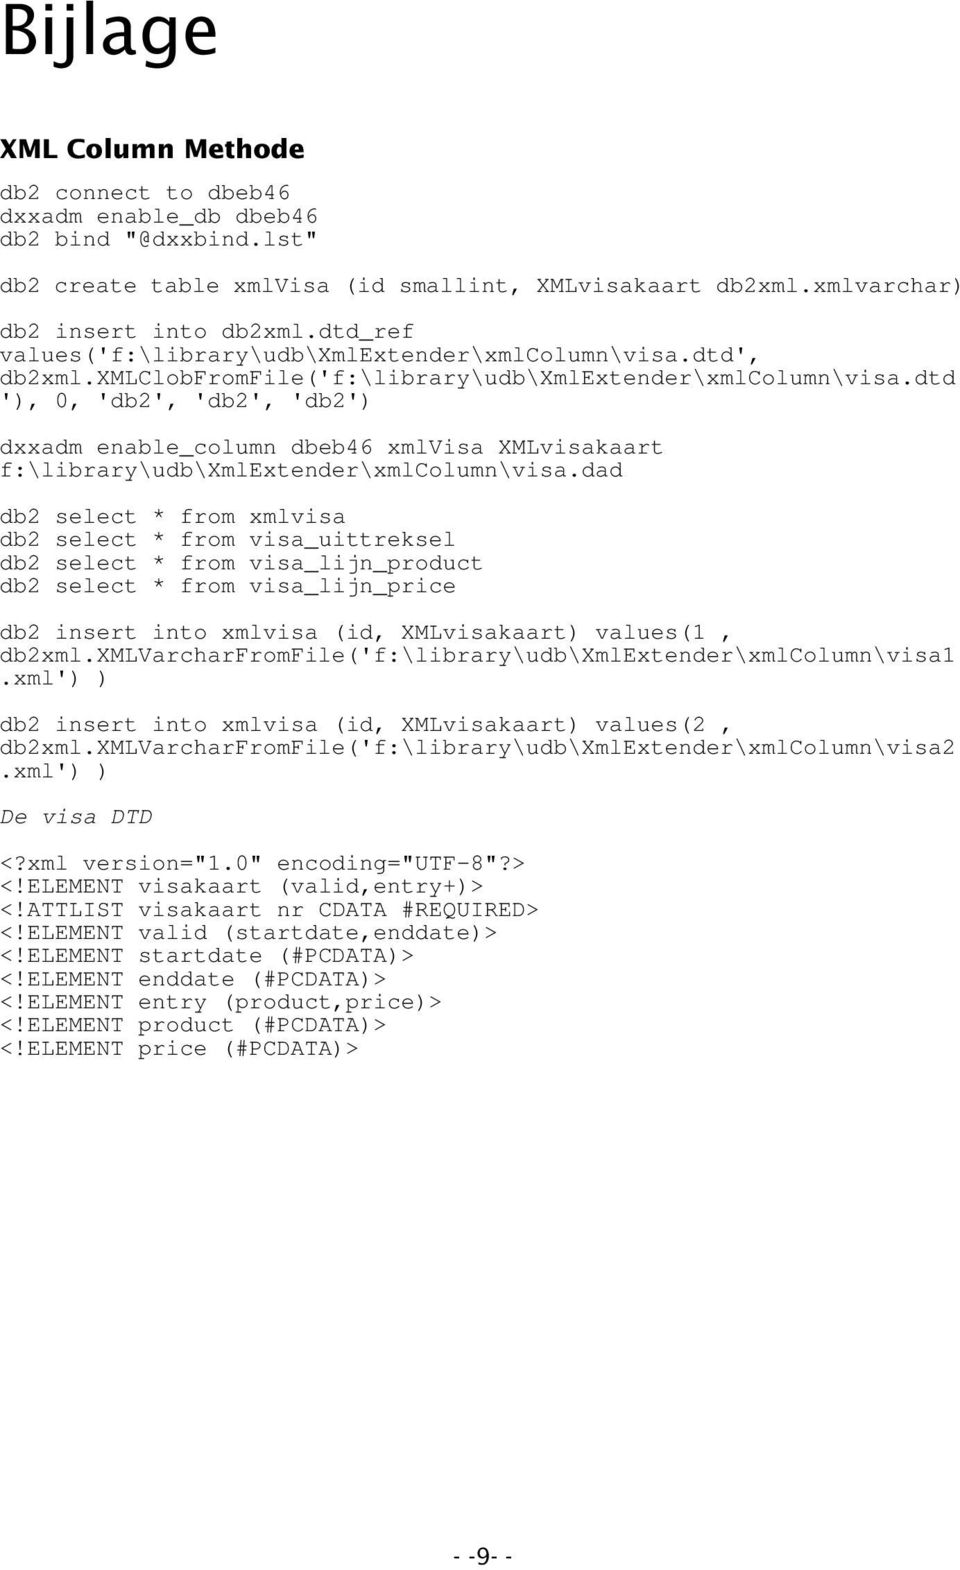 dtd '), 0, 'db2', 'db2', 'db2') dxxadm enable_column dbeb46 xmlvisa XMLvisakaart f:\library\udb\xmlextender\xmlcolumn\visa.